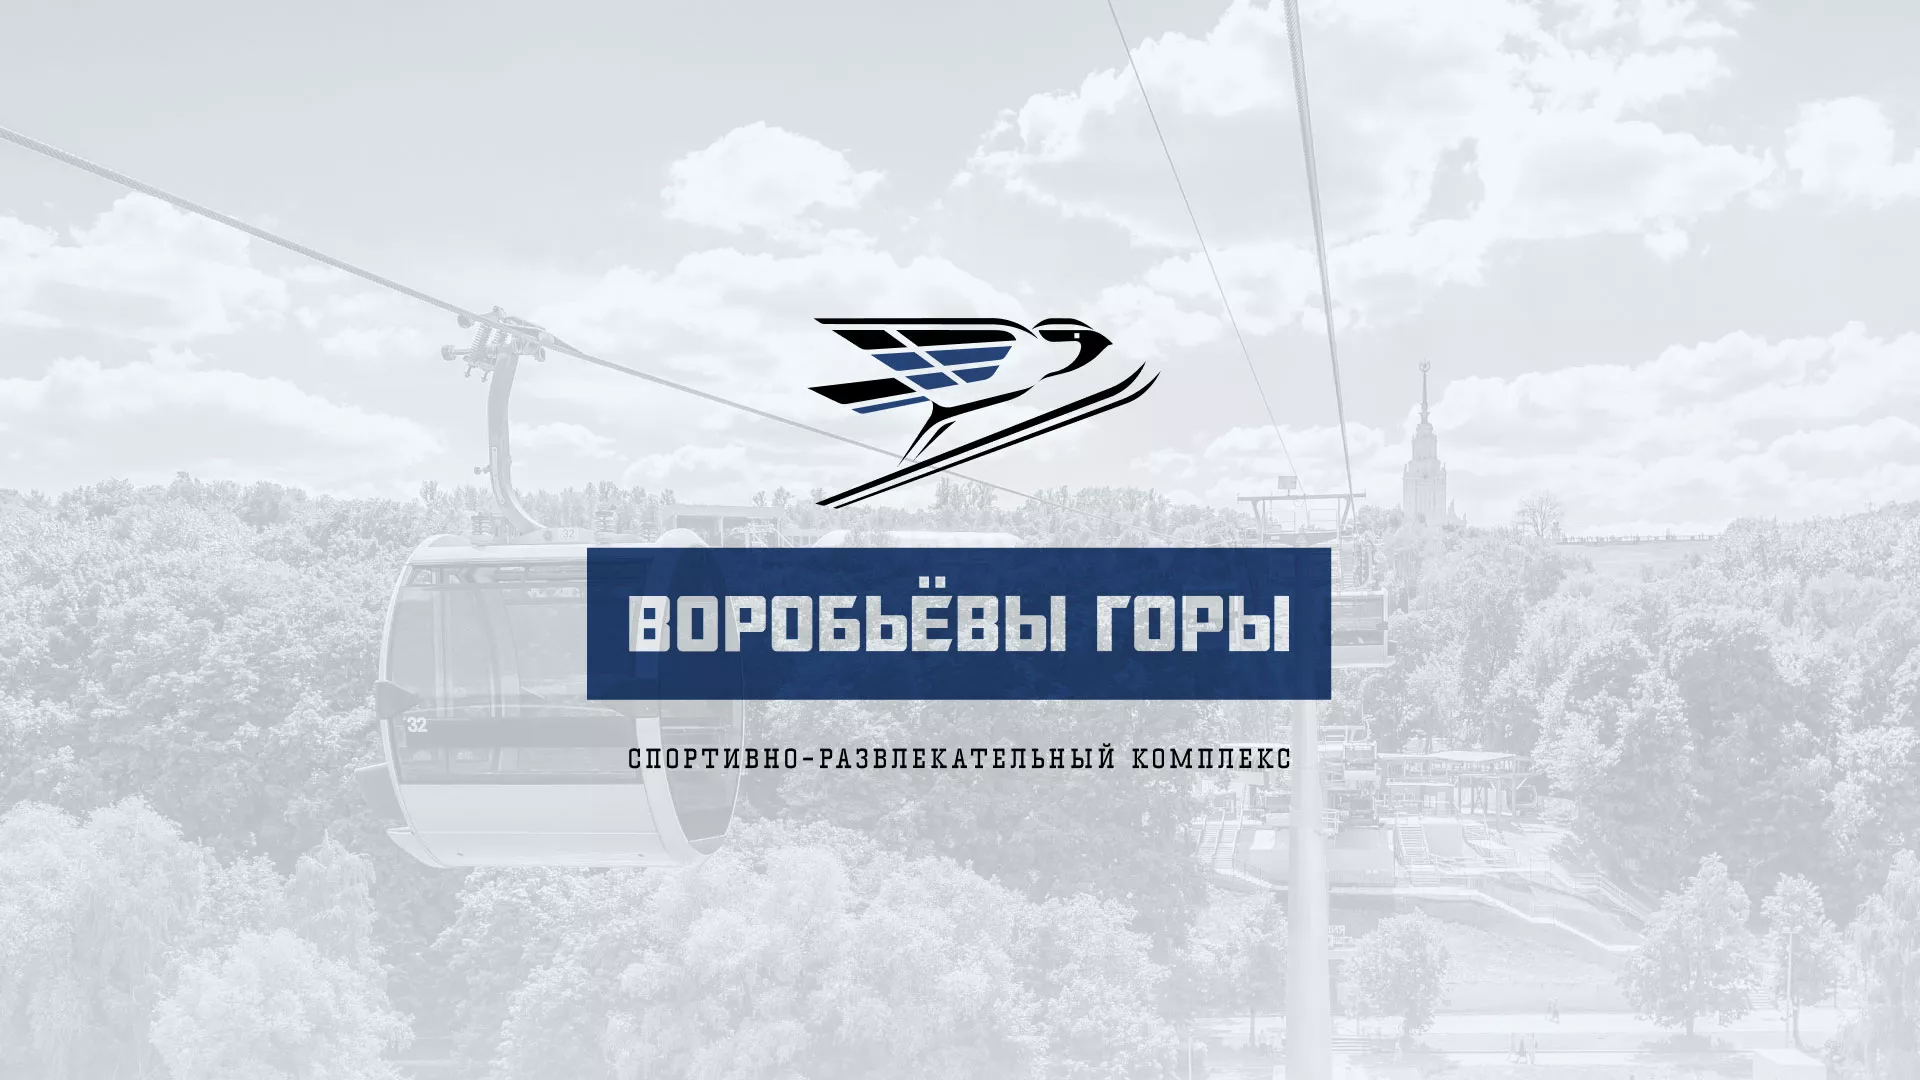 Разработка сайта в Альметьевске для спортивно-развлекательного комплекса «Воробьёвы горы»